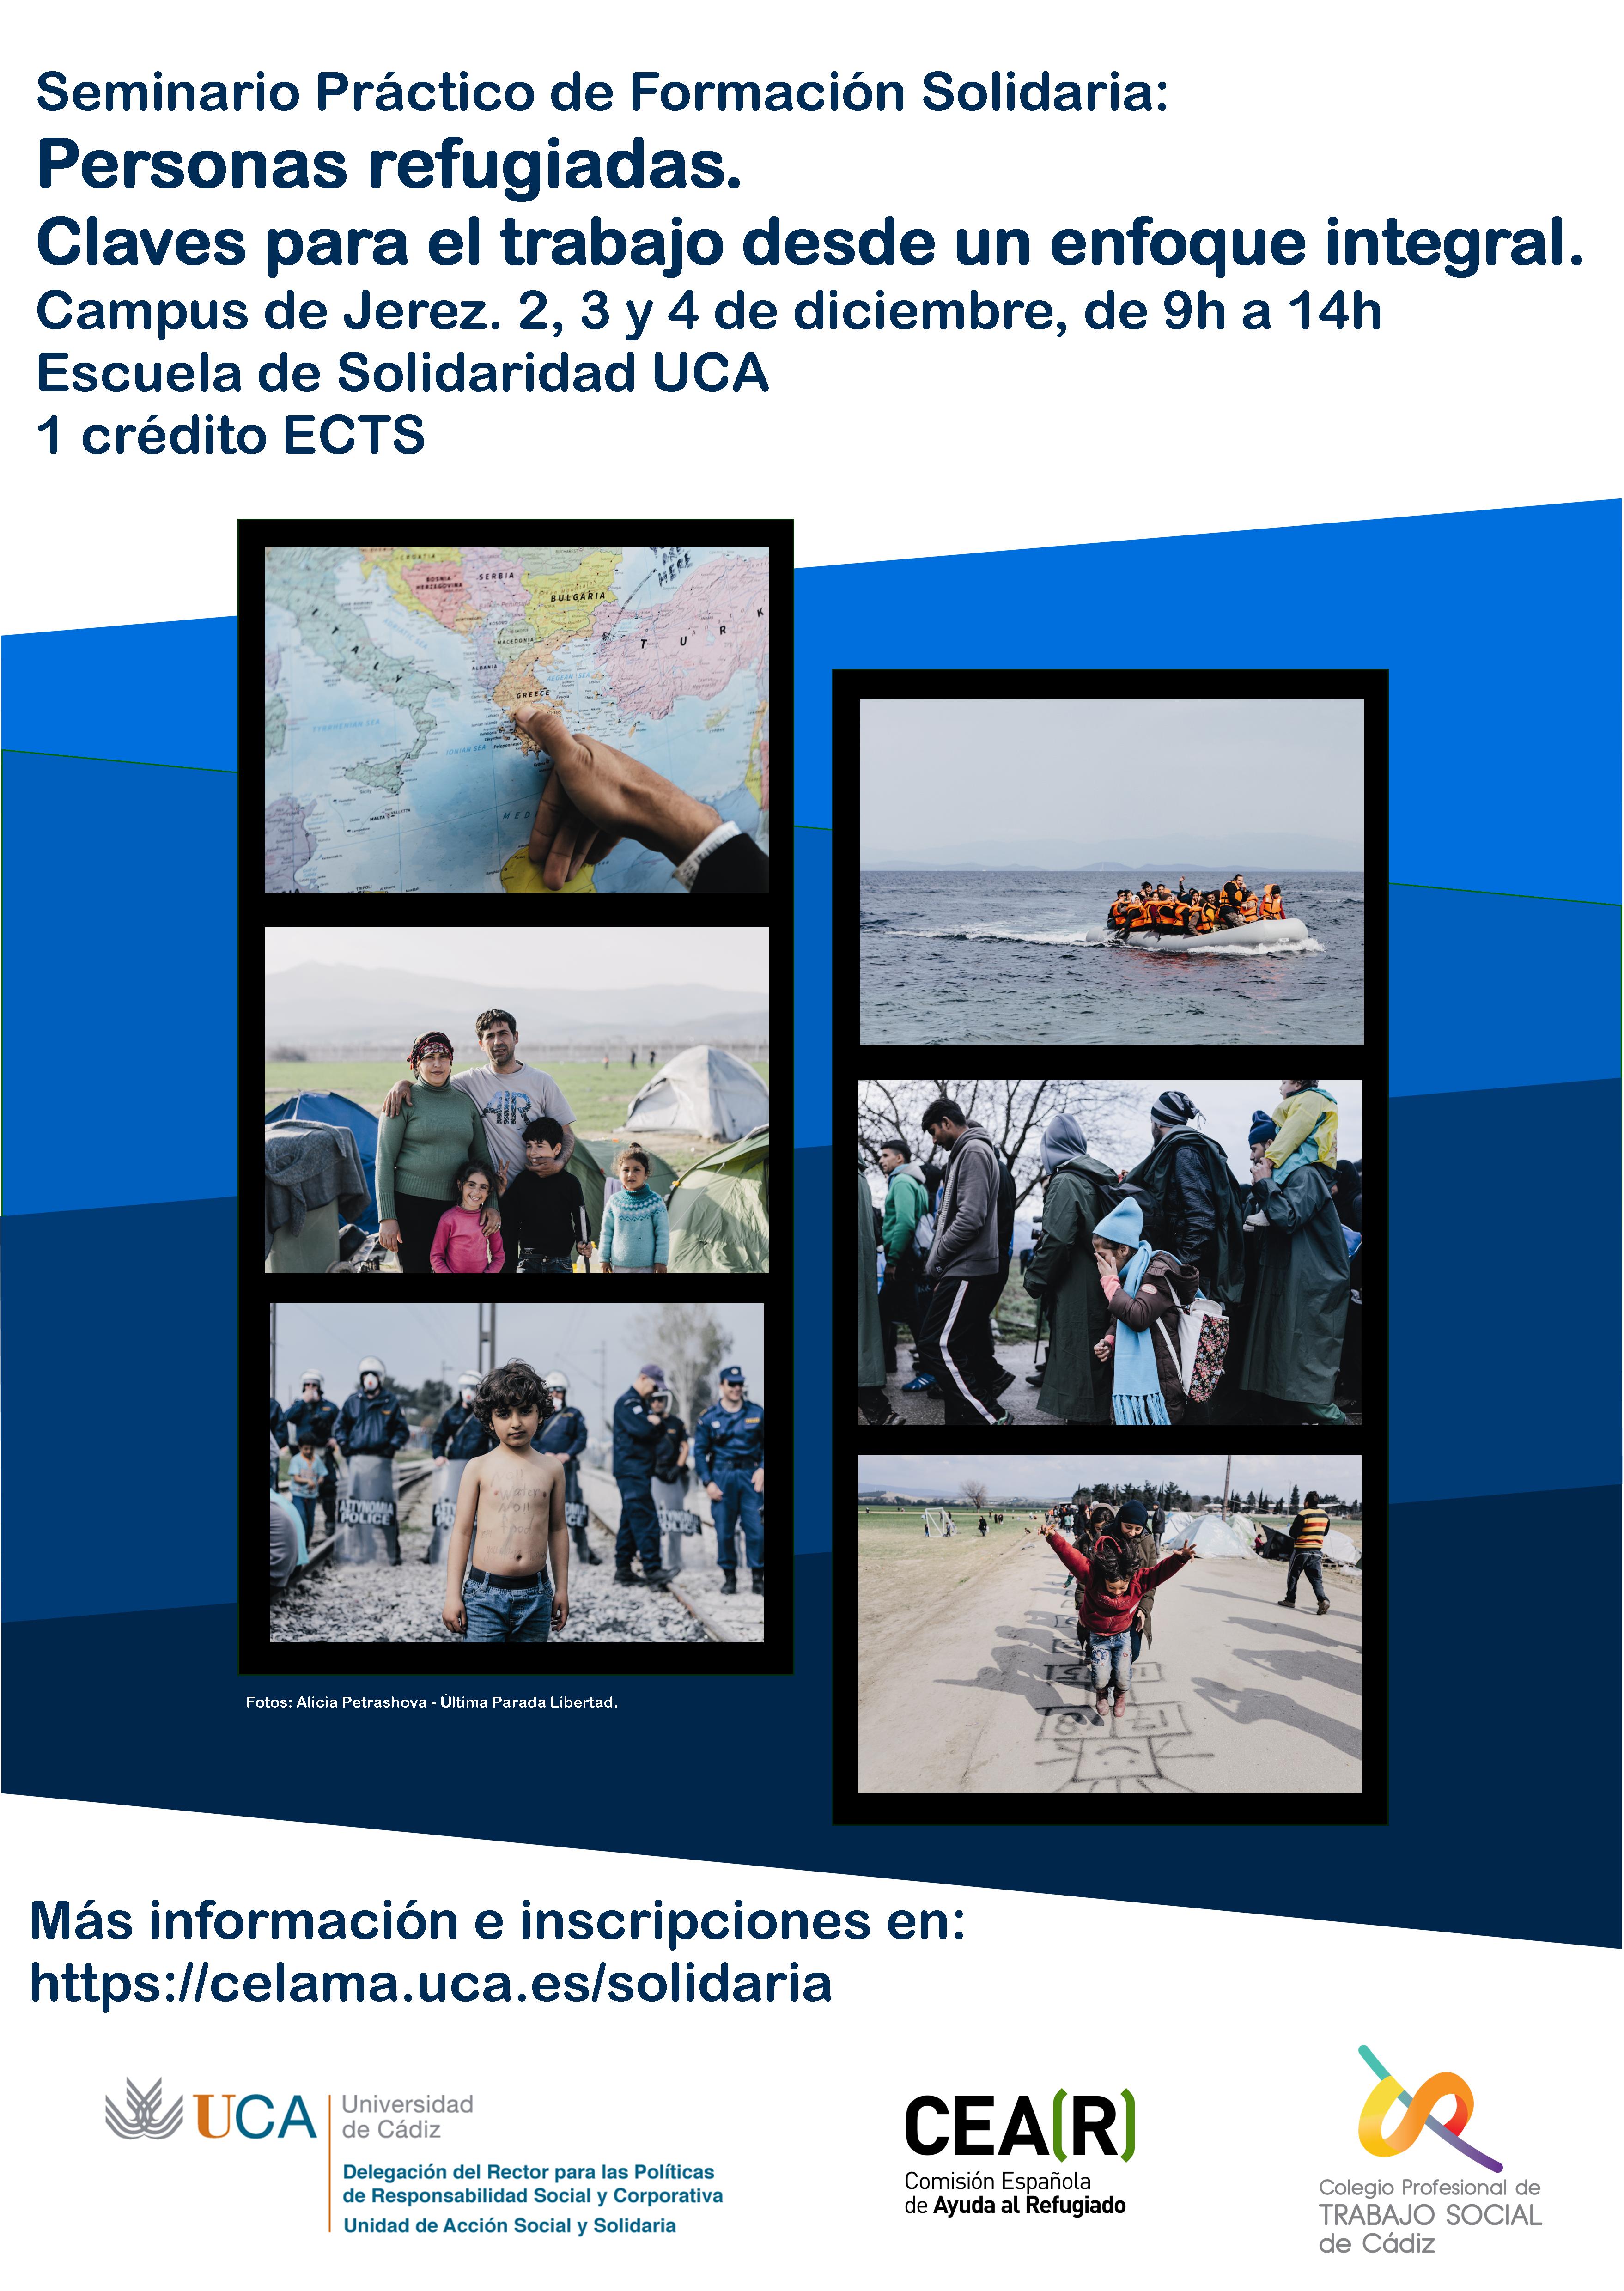 Seminario “Personas refugiadas: Claves para el trabajo desde un enfoque integral”. Campus de Jerez 2, 3 y 4 de diciembre.